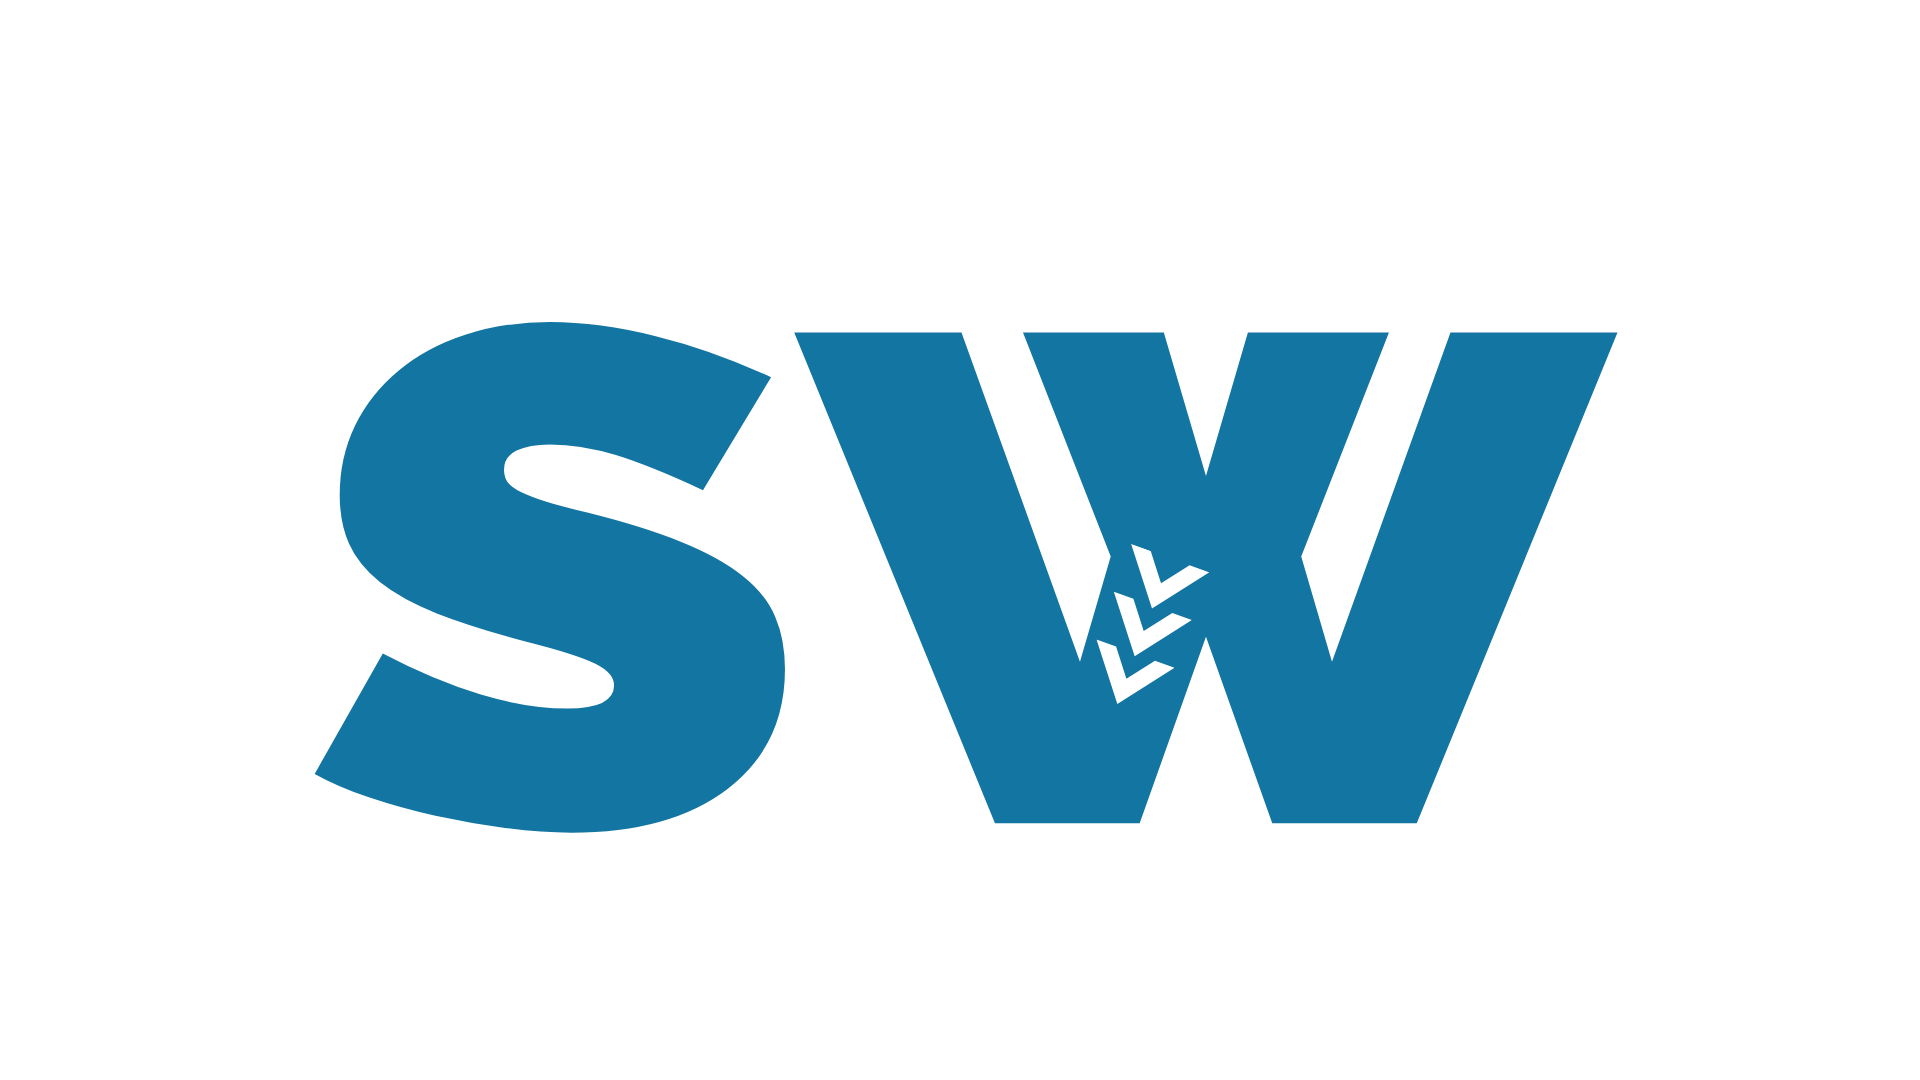 aar-sw logo